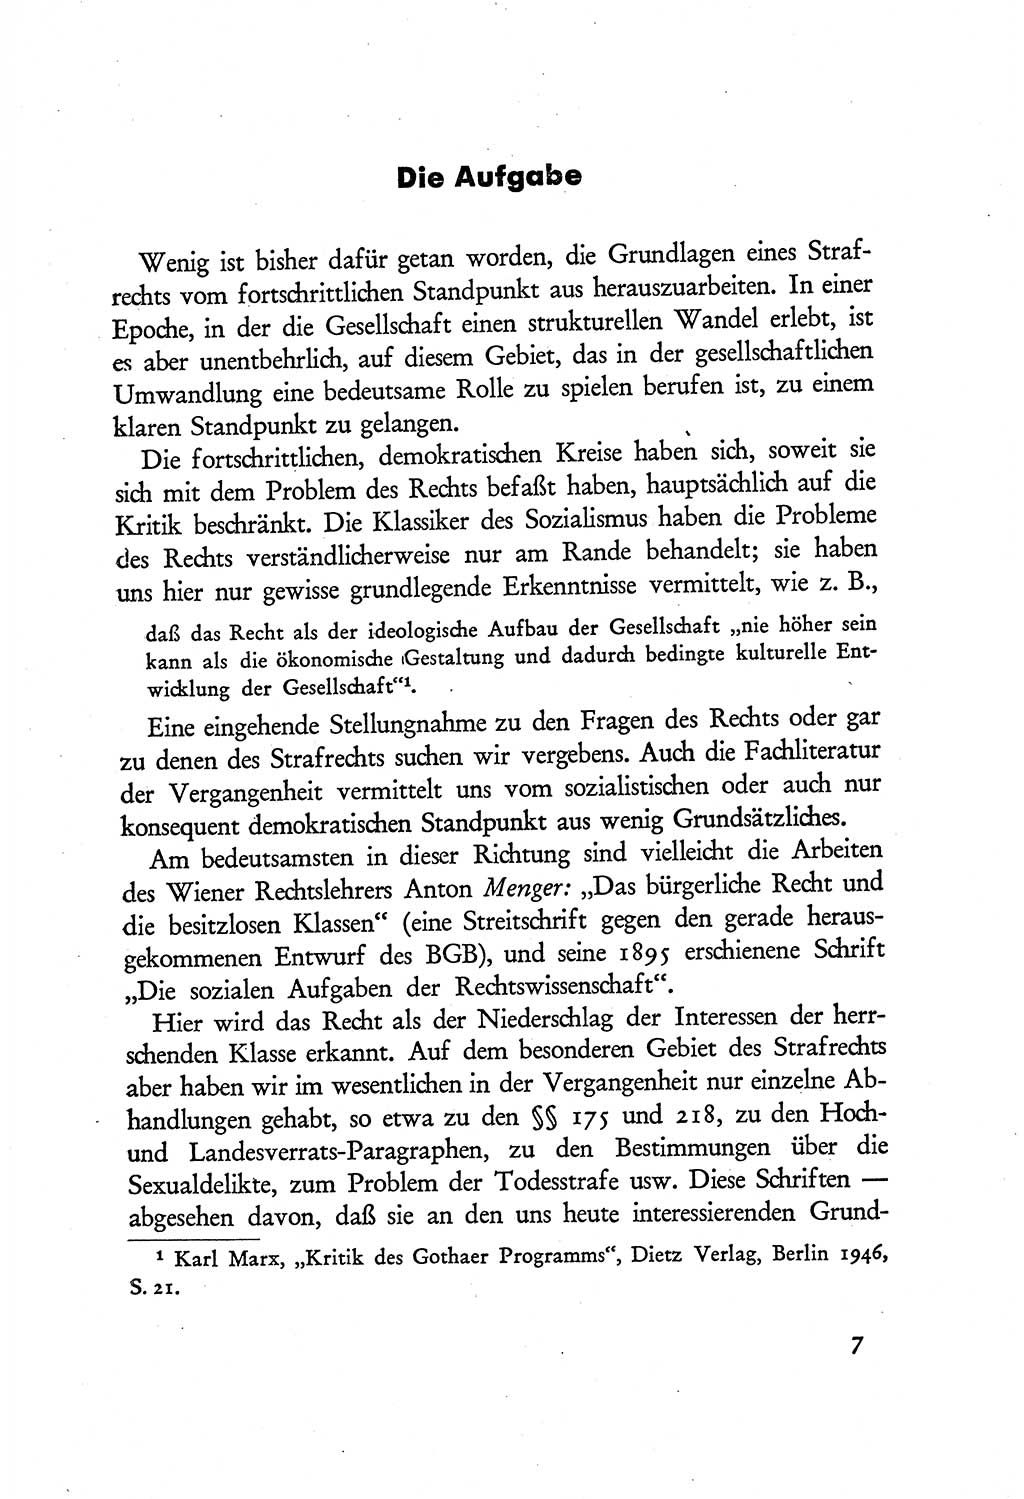 Probleme eines demokratischen Strafrechts [Sowjetische Besatzungszone (SBZ) Deutschlands] 1949, Seite 7 (Probl. Strafr. SBZ Dtl. 1949, S. 7)